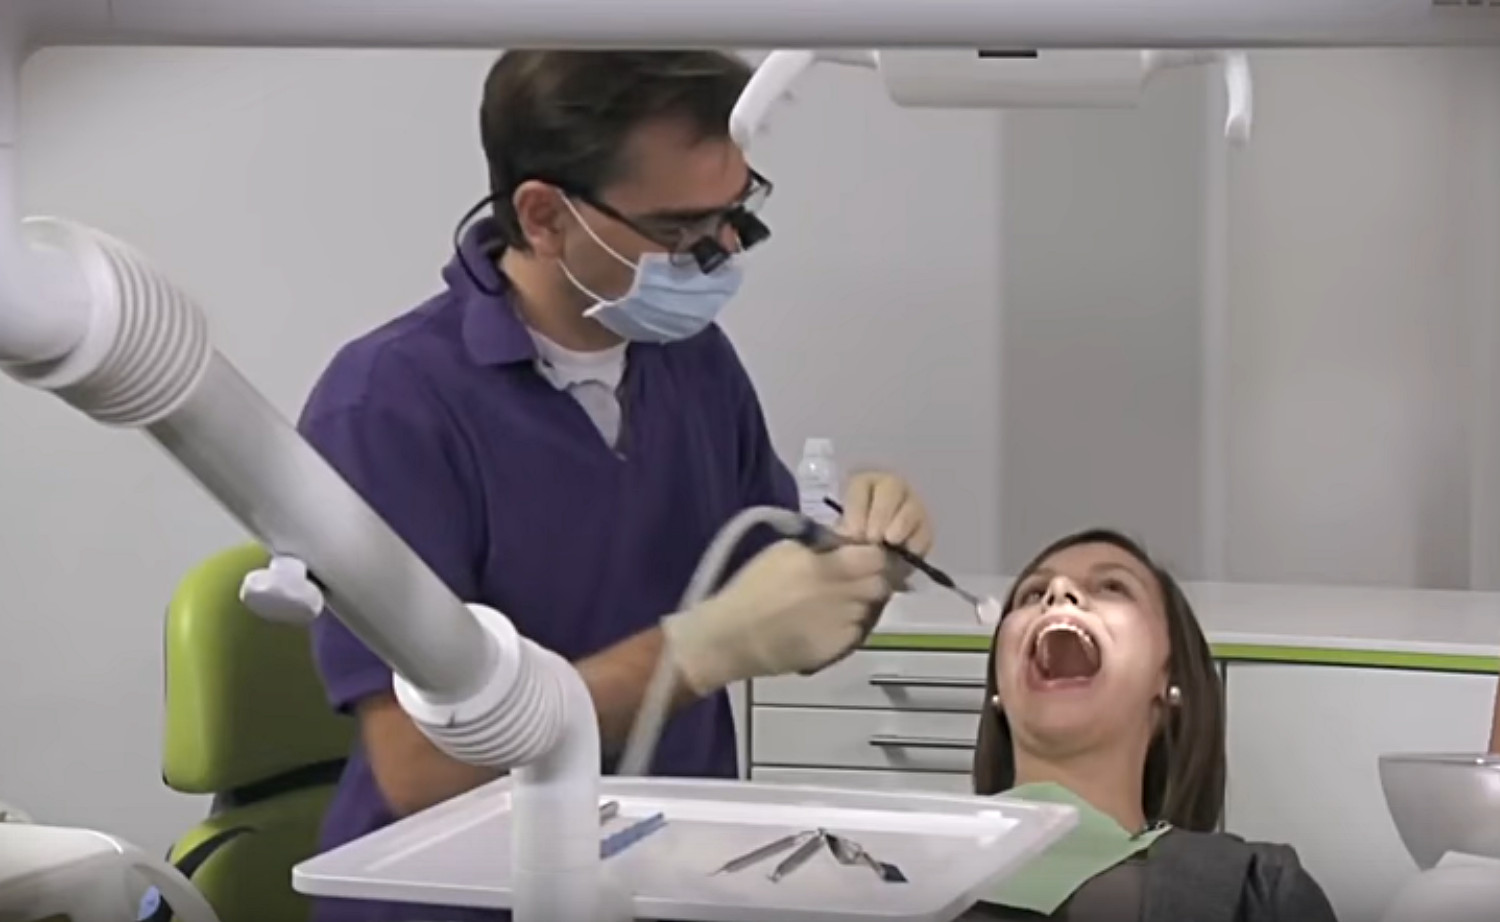 Dentiste de garde à La Roche-sur-Foron